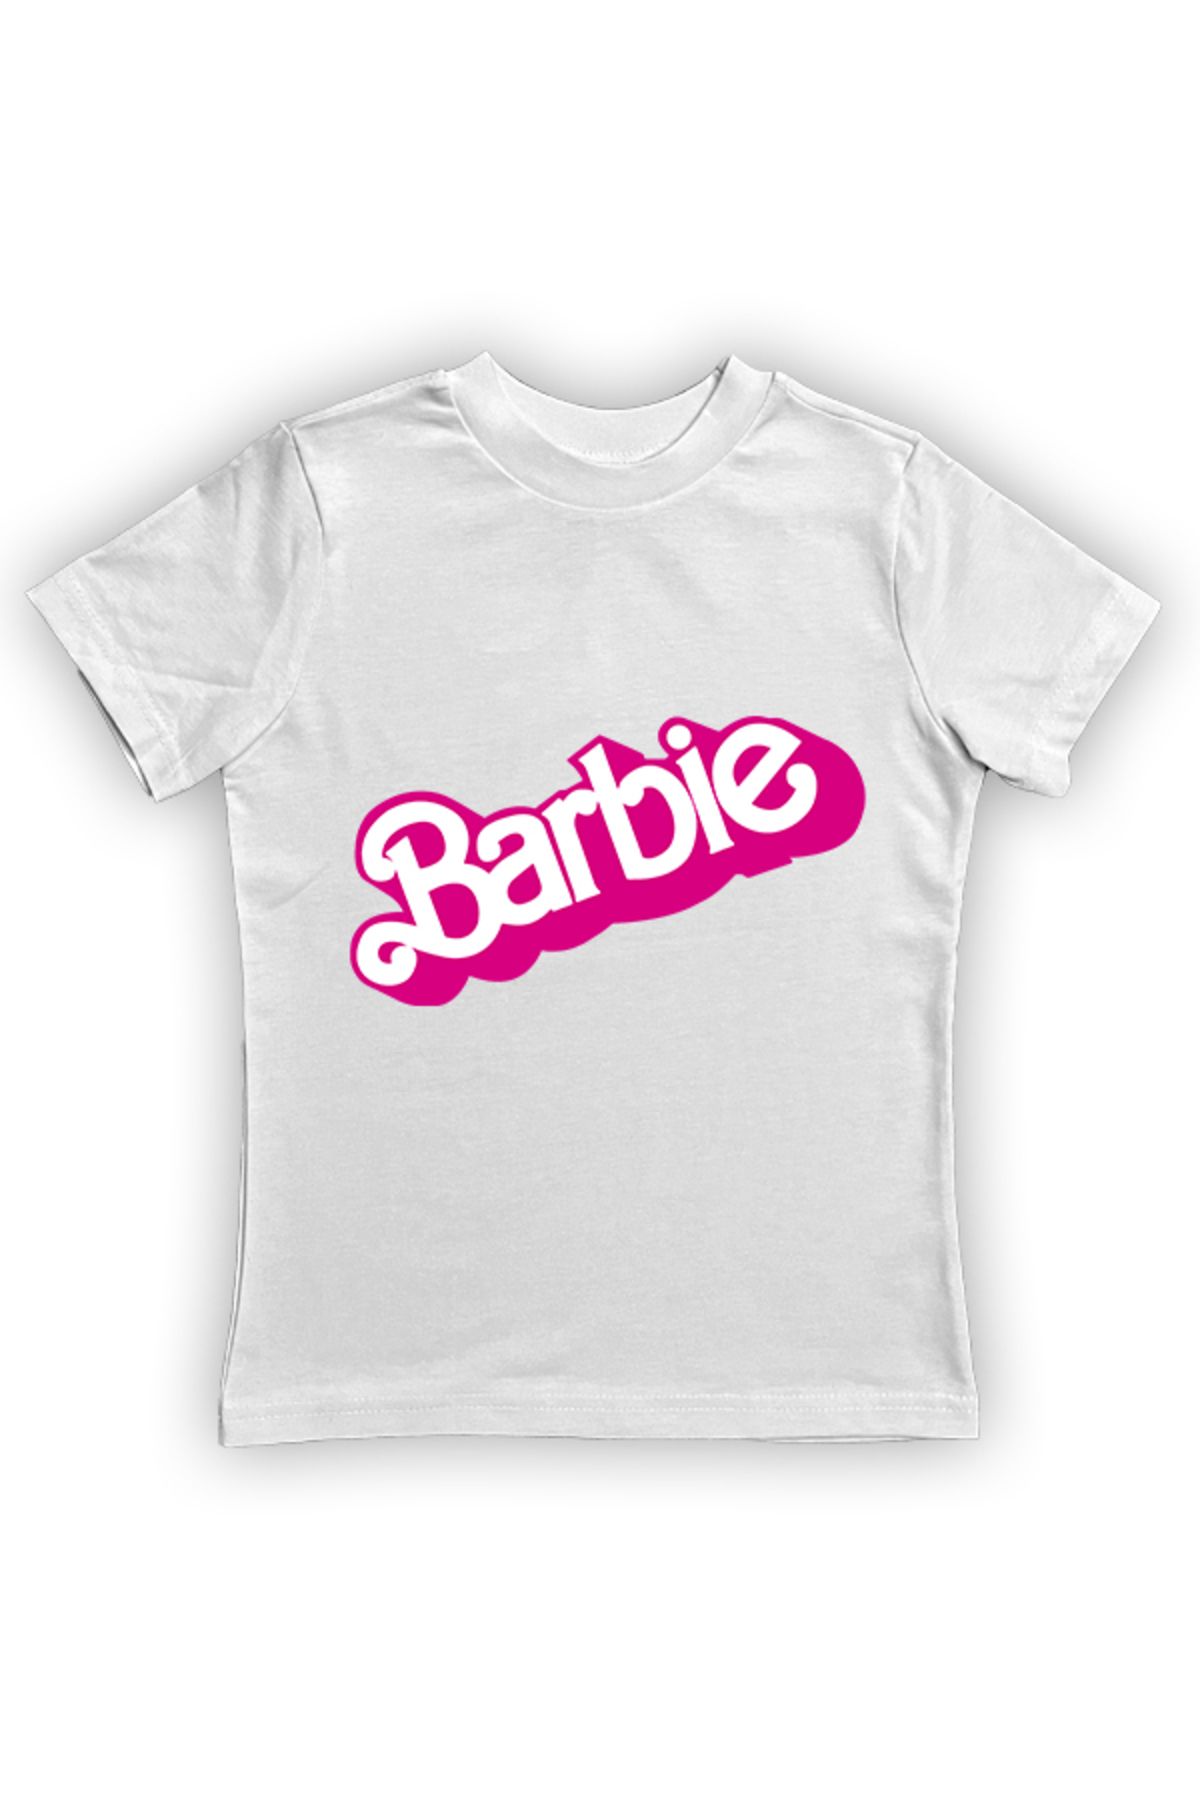 Barbie baskılı pamuklu penye kumaş yazlık çocuk tişört TYCFDQQCDN170699987910699